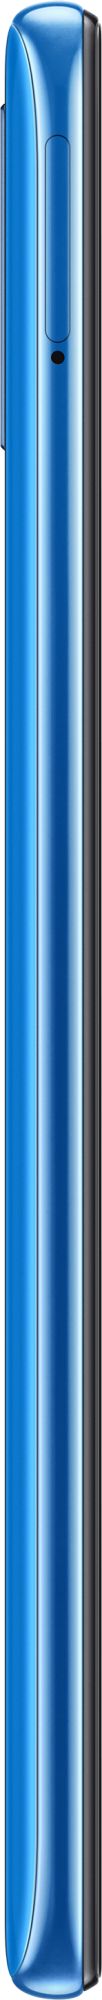 Samsung Galaxy A50 64GB Blue